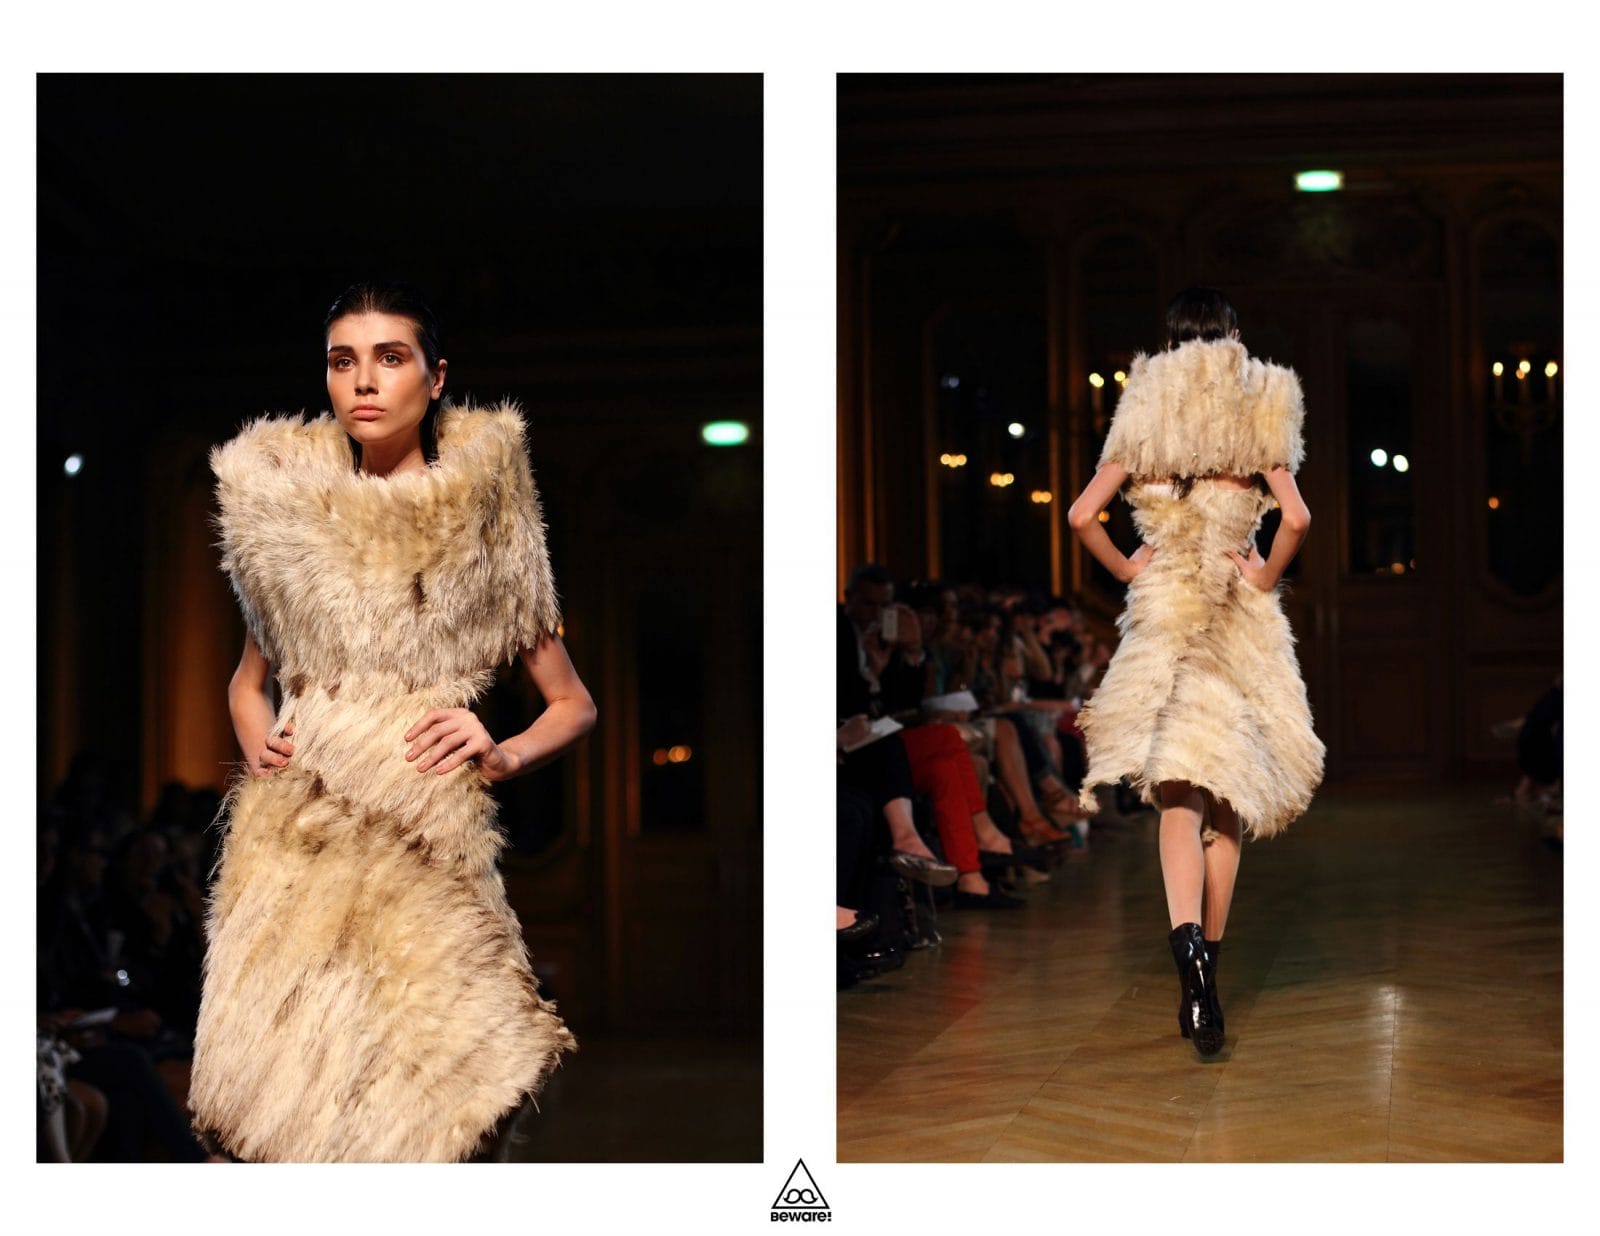 Défilé Haute Couture 2012/13 : Serkan Cura 26